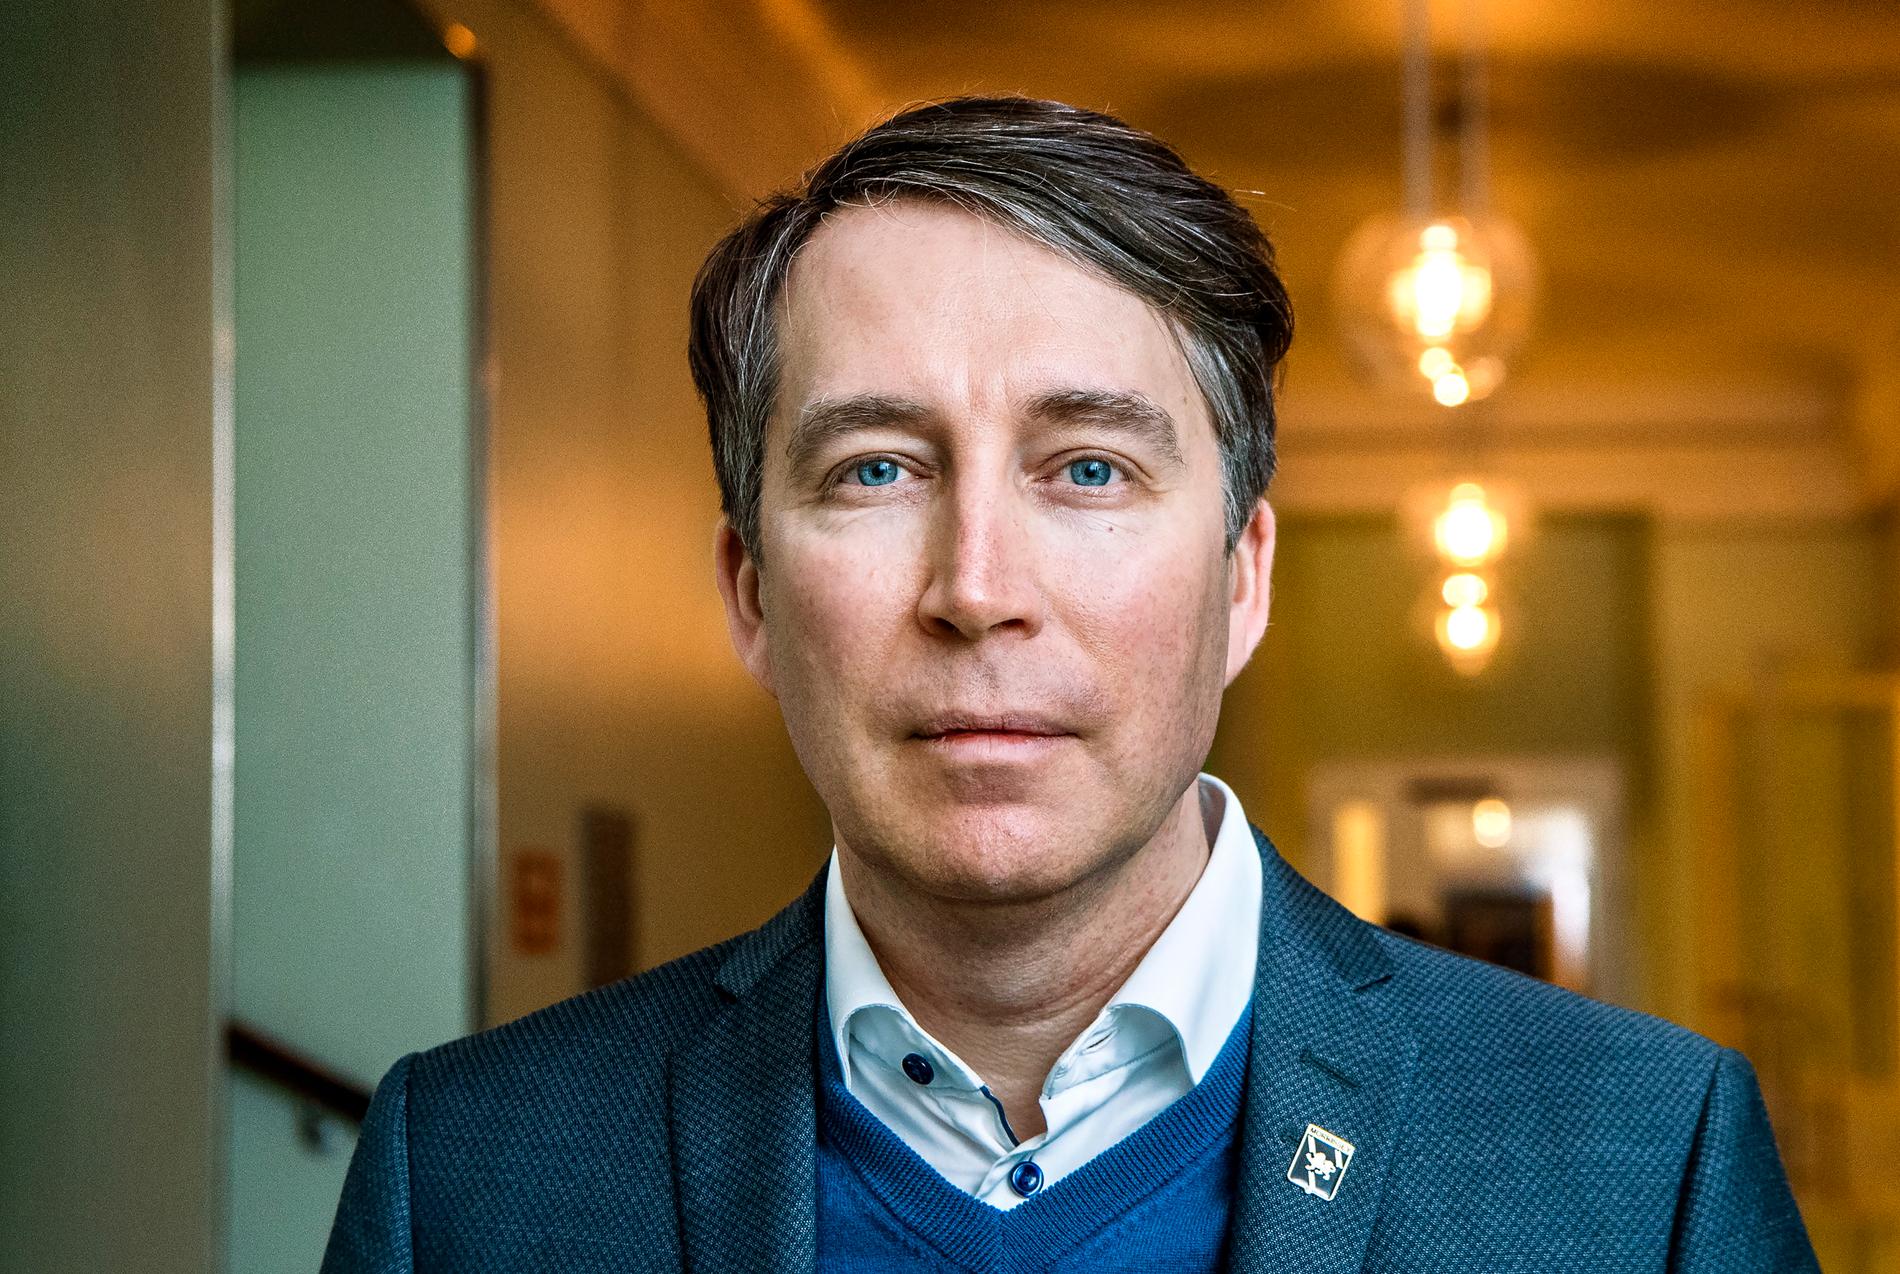 Sverigedemokraternas partisekreterare Richard Jomshof säger att målet givetvis är att ingå i en regering med Moderaterna och Kristdemokraterna, inte vara ett stöd vid sidan av.